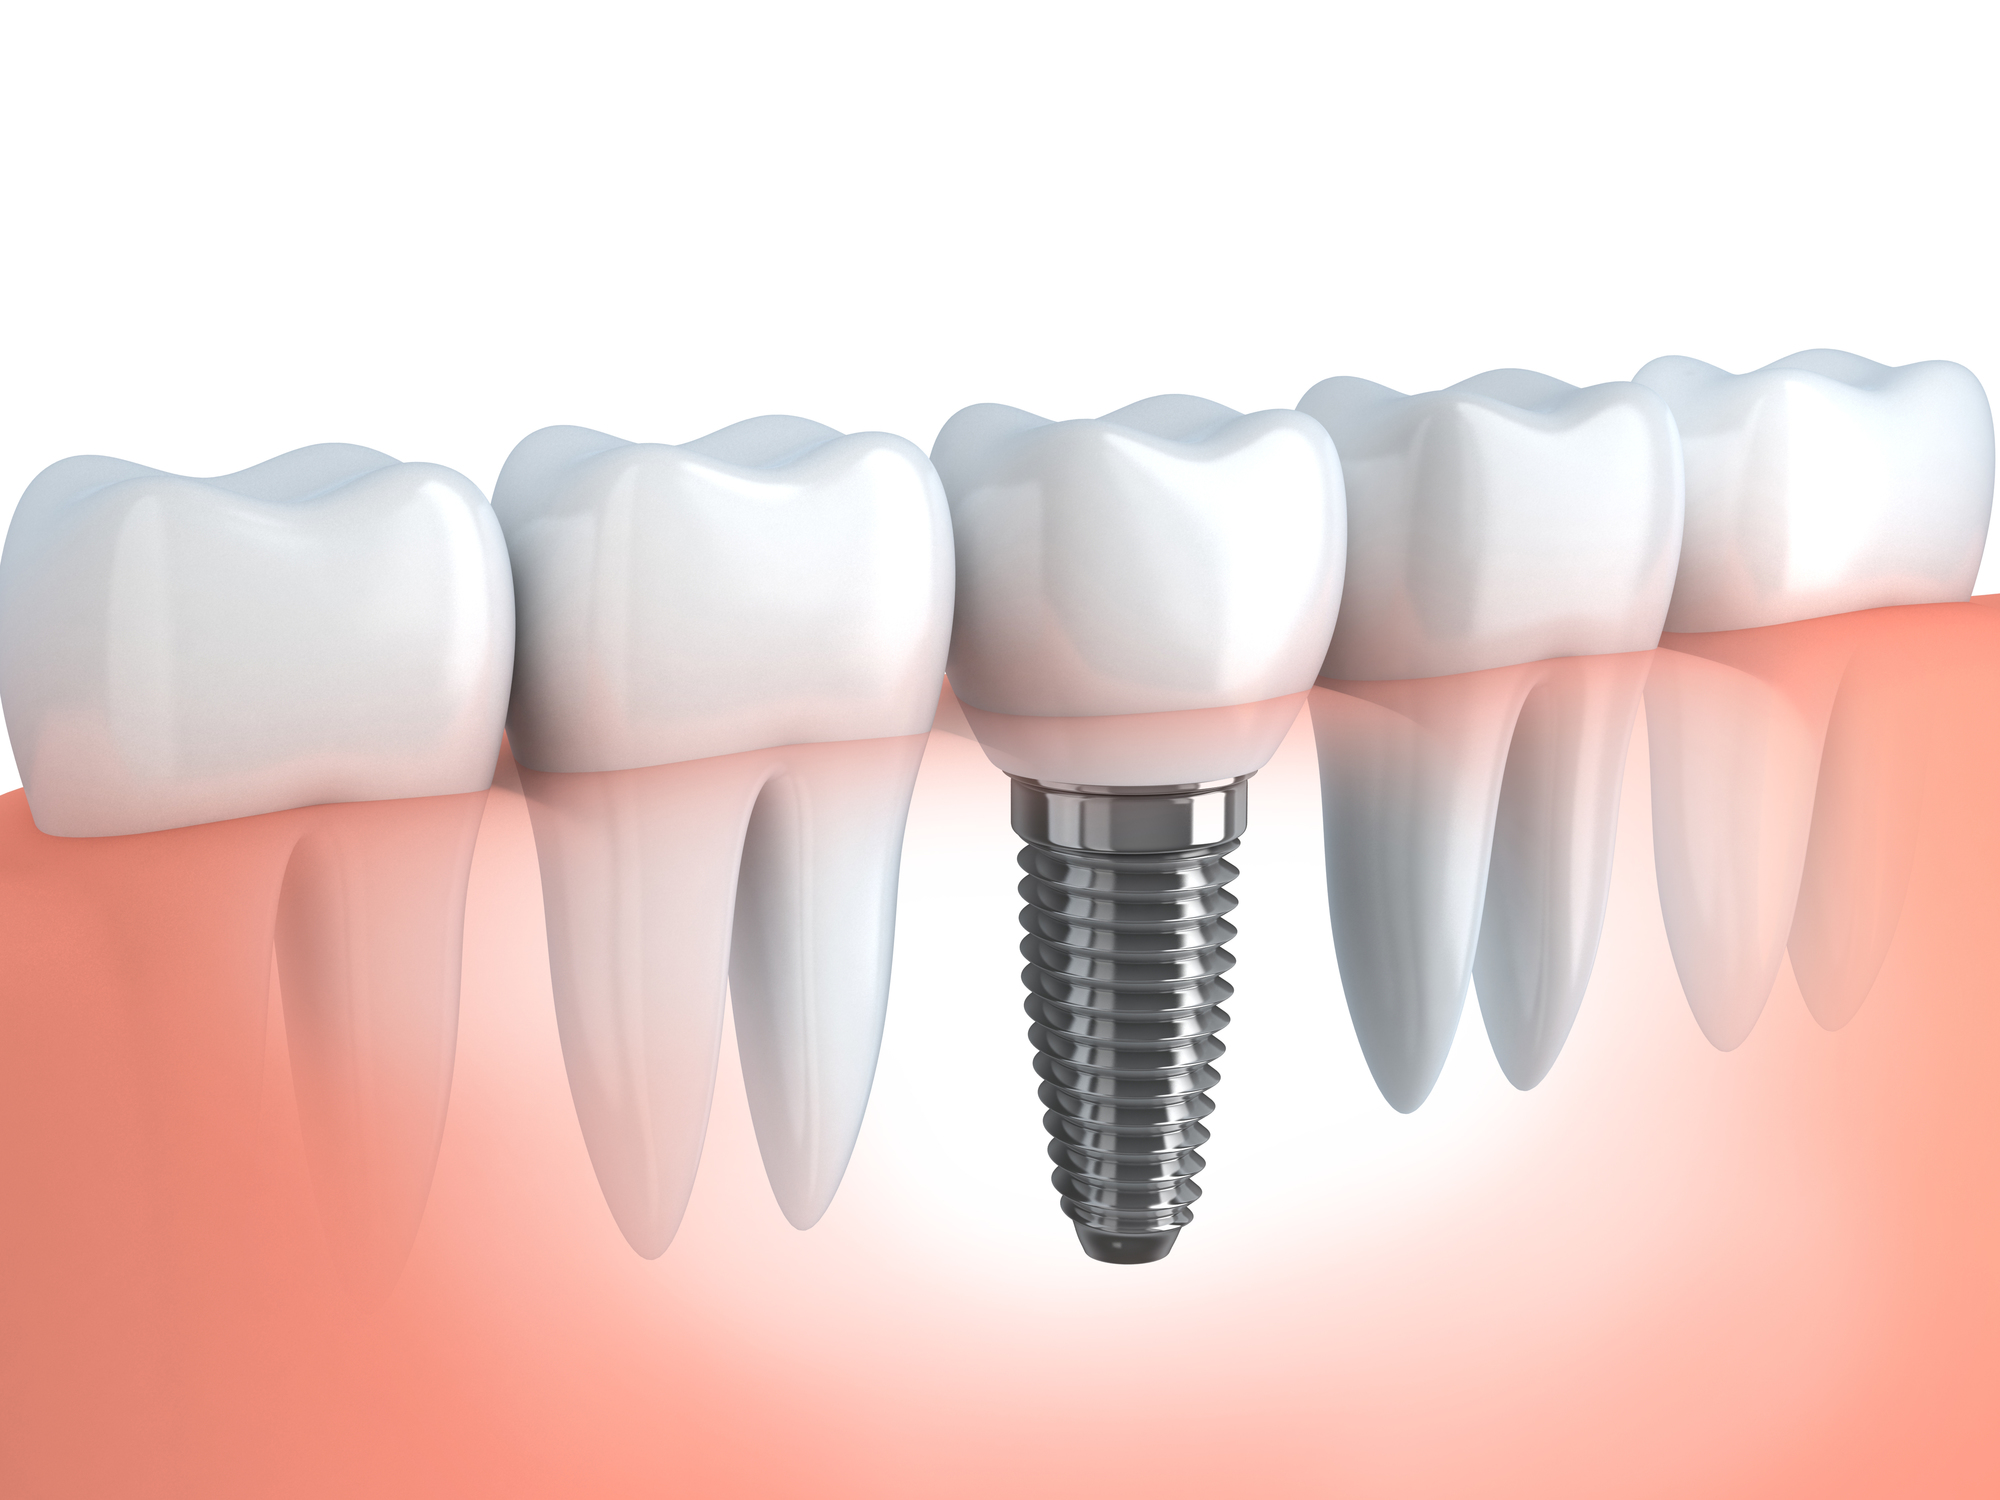 インプラントは歯を失ってしまった方への治療法です。